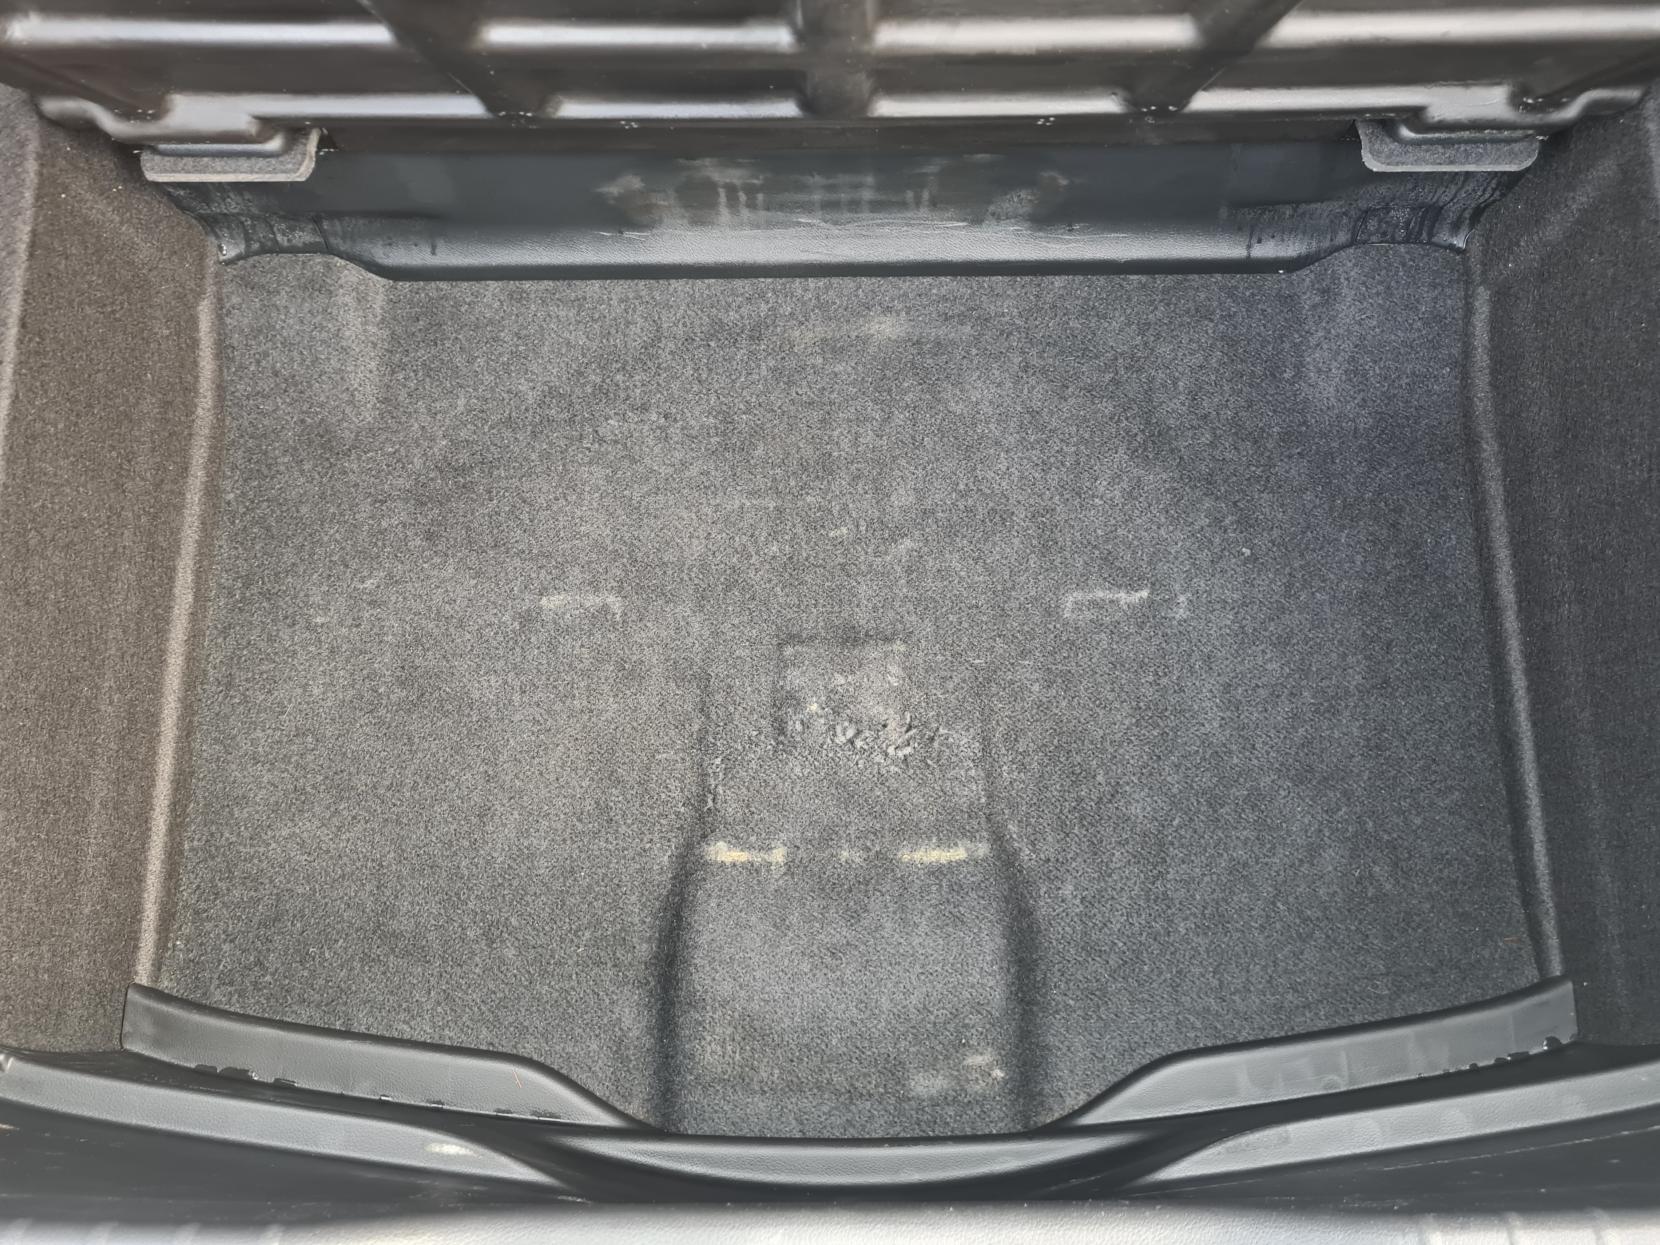 Honda Civic 2.2 i-DTEC SE Hatchback 5dr Diesel Manual Euro 5 (s/s) (150 ps)